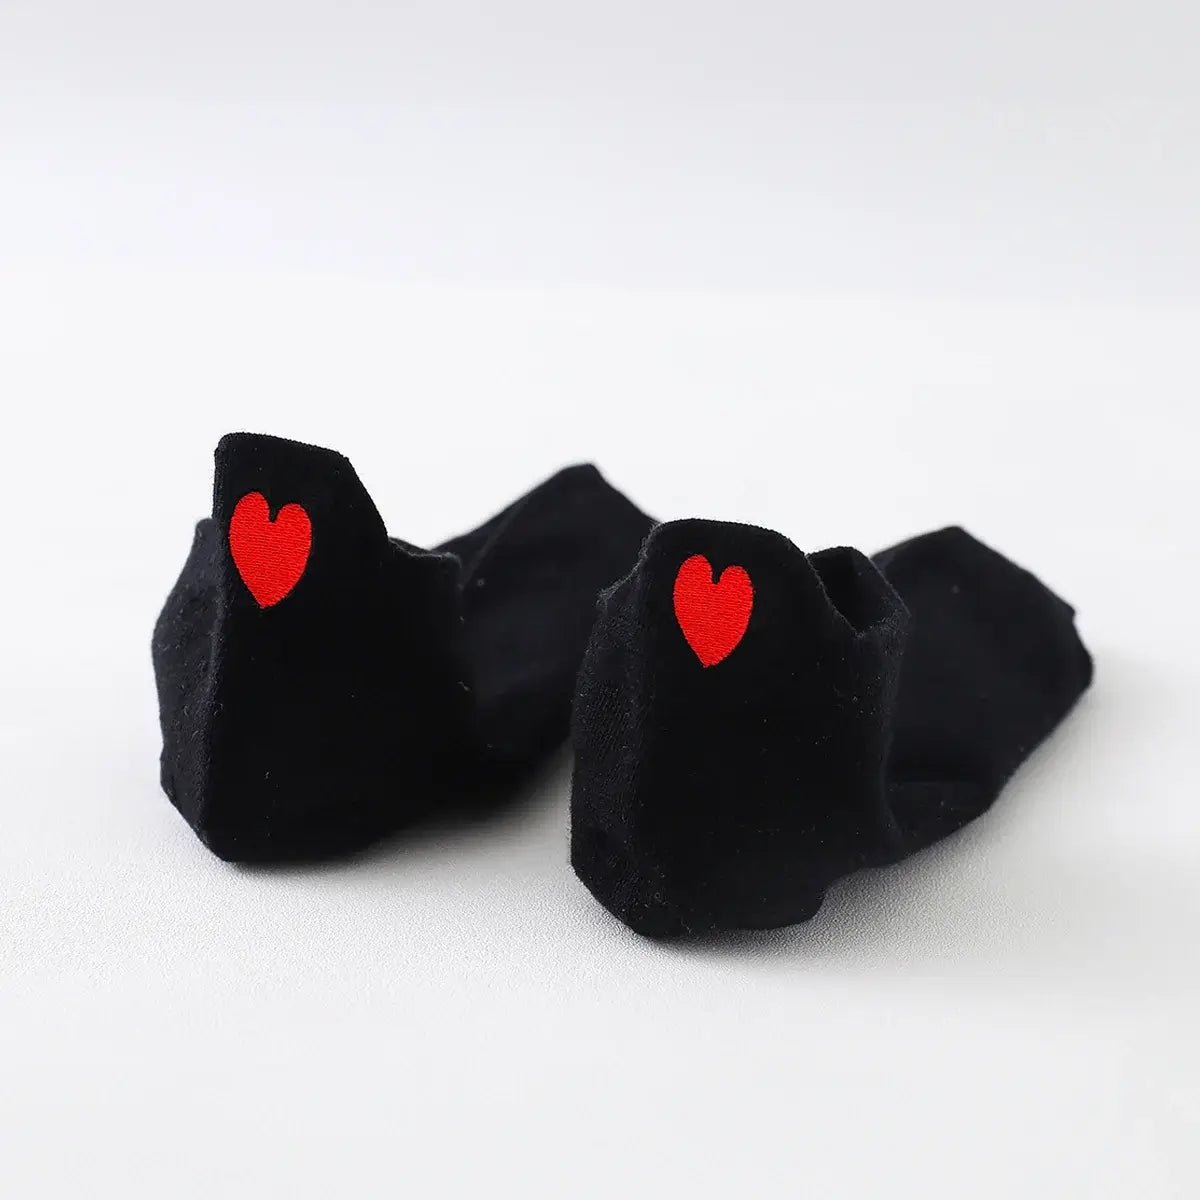 Chaussettes noir en coton à languette cœur rouge pour femme | Chaussettes douces et respirantes | Fabriquées à partir de matériaux de haute qualité | Un cadeau parfait pour les femmes de tous âges